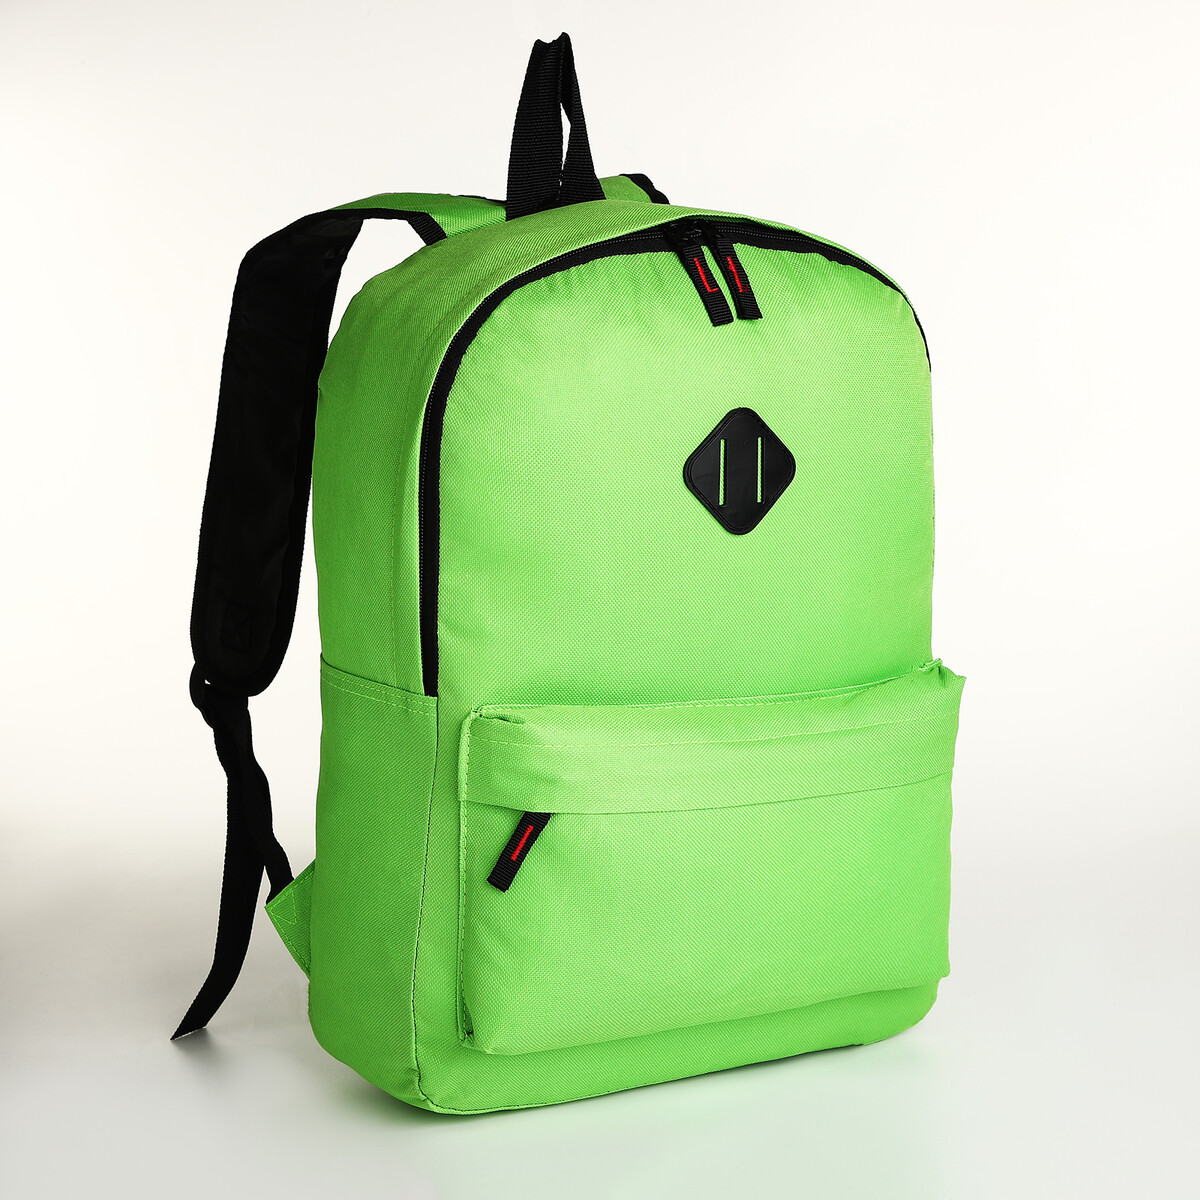 Рюкзак молодежный на молнии, наружный карман, цвет зеленый